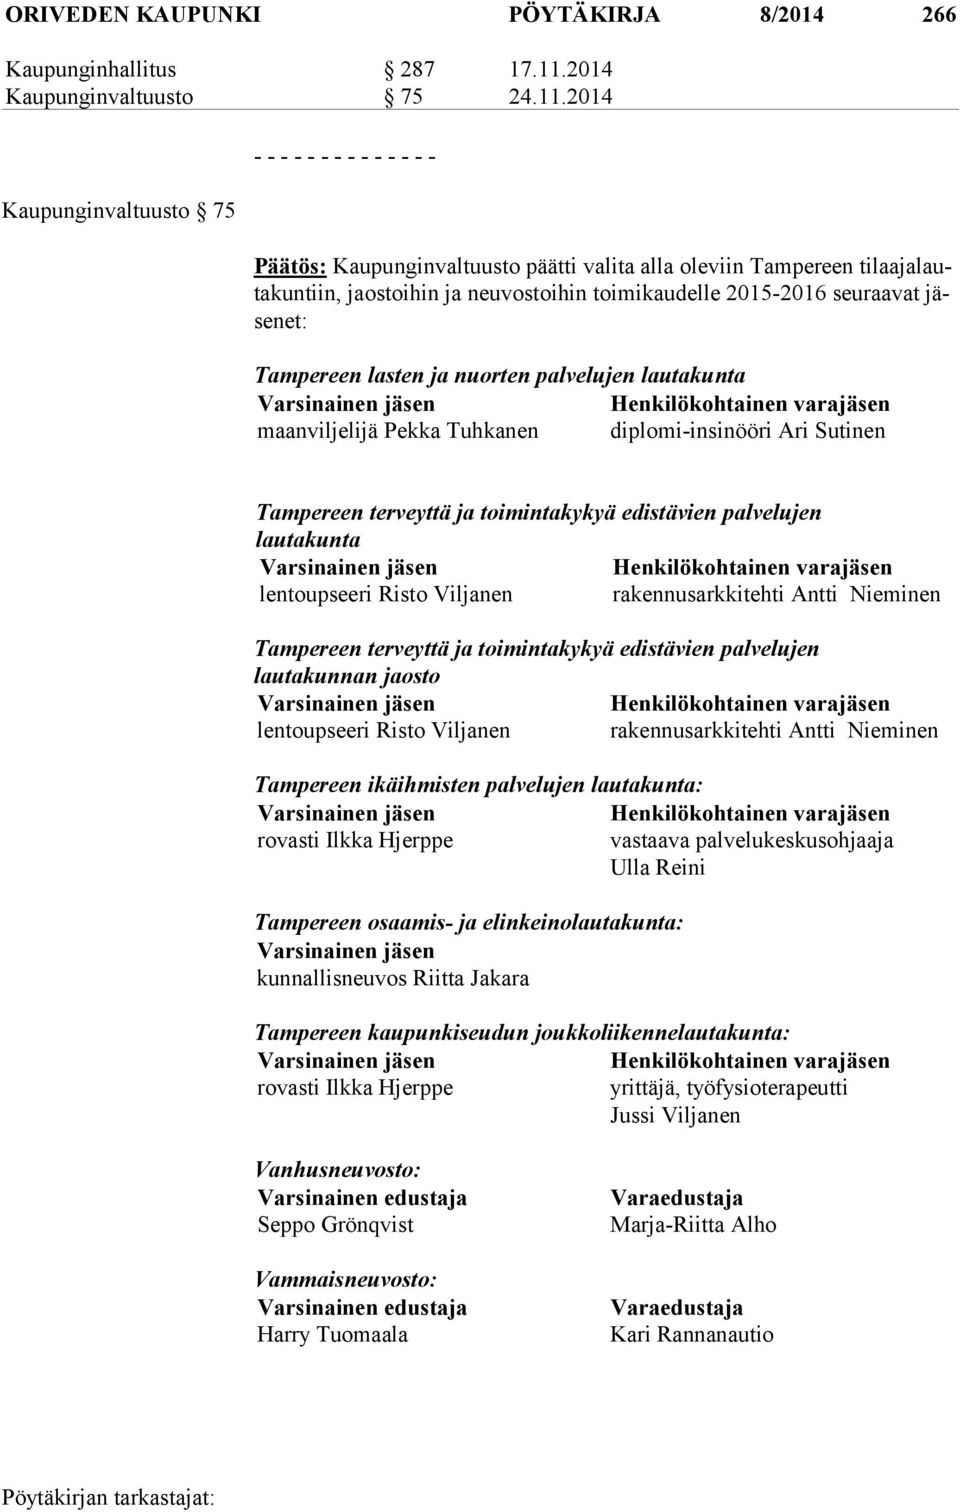 2014 Kaupunginvaltuusto 75 - - - - - - - - - - - - - - Päätös: Kaupunginvaltuusto päätti valita alla oleviin Tampereen ti laa ja lauta kun tiin, jaostoihin ja neuvostoihin toimikaudelle 2015-2016